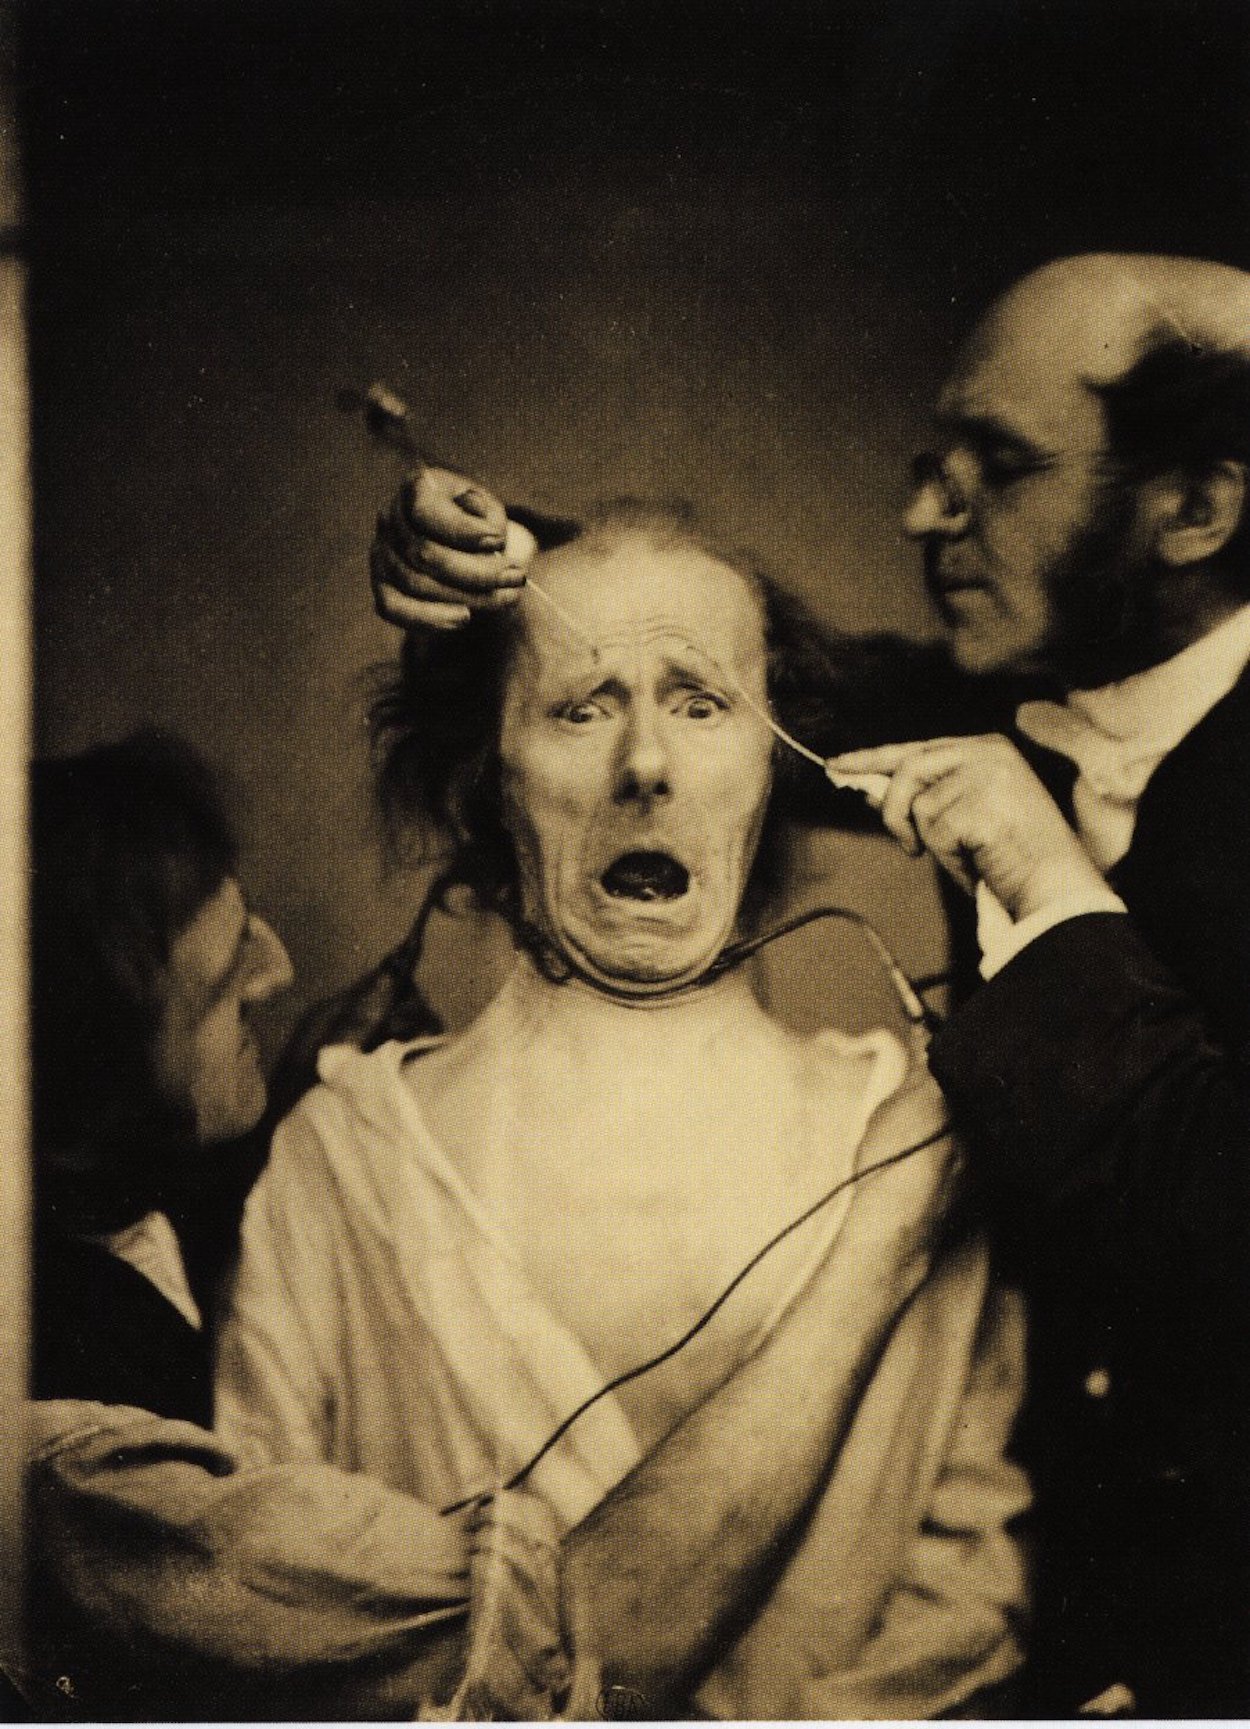 دوتشين و مساعده يستجديان تعبير الخوف باستخدام تنبيه كهربائي by Paul Nadar - 1862 